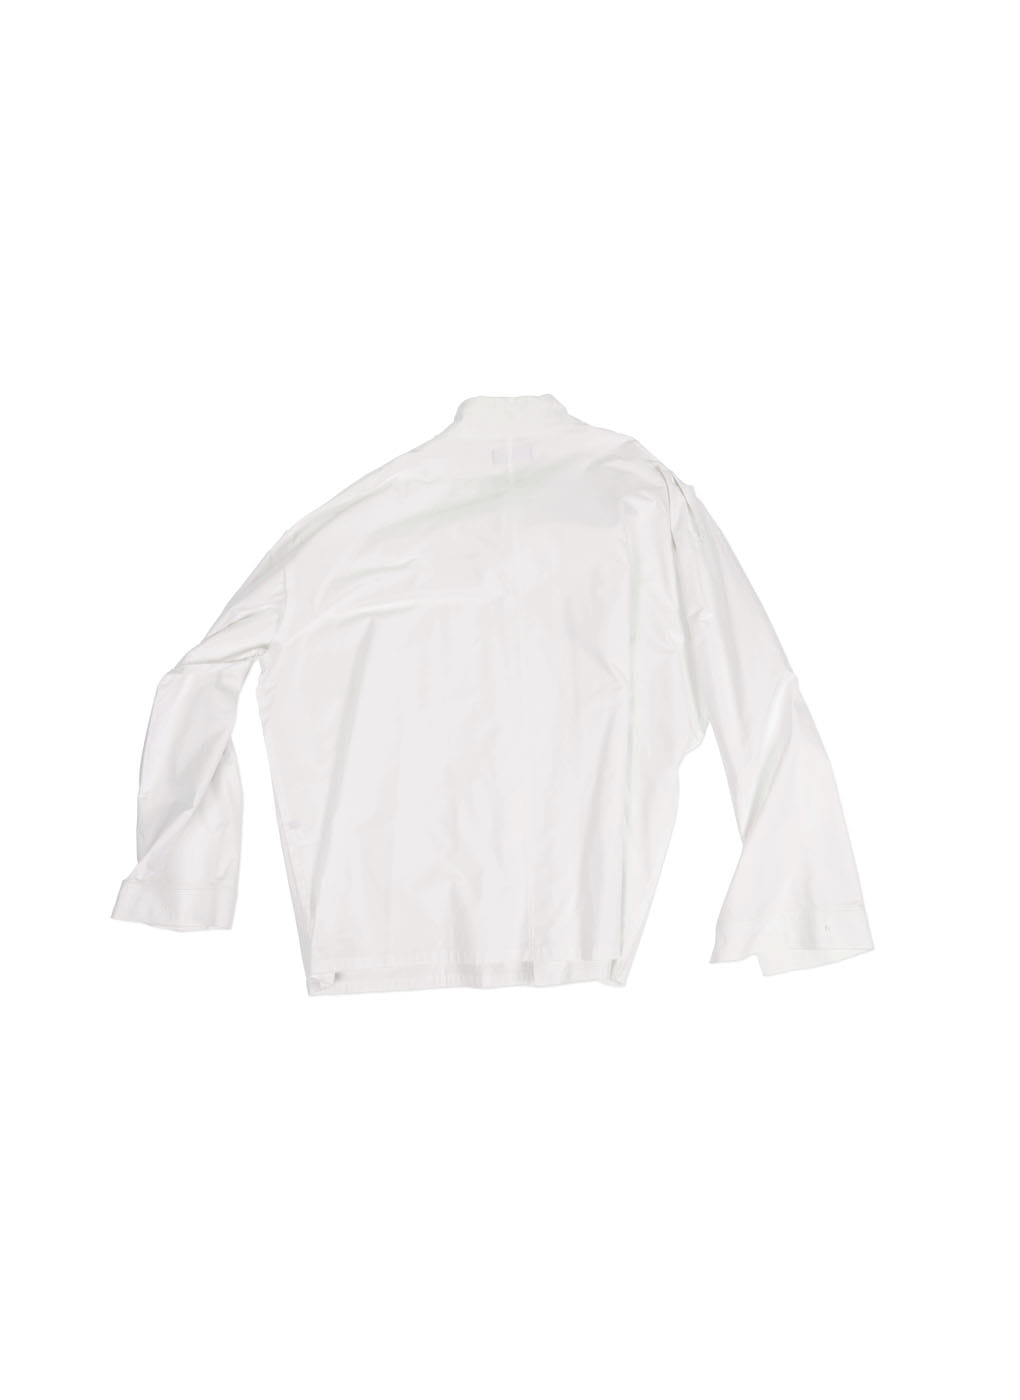 White Supersized Shirt